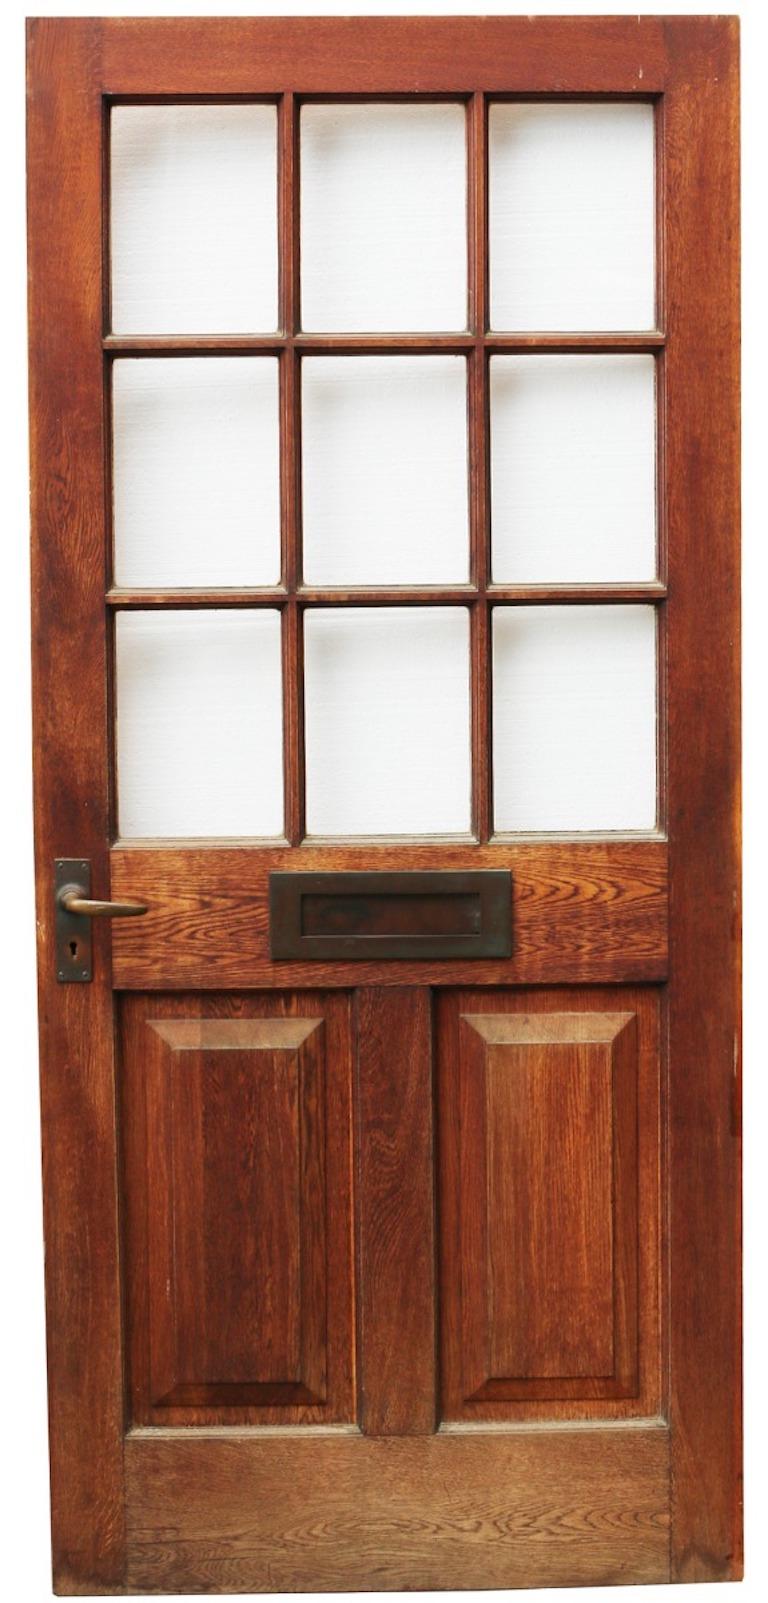 Eine große, renovierte Eichenholztür aus der Edwardianischen Epoche, die mit einer Verglasung versehen ist.